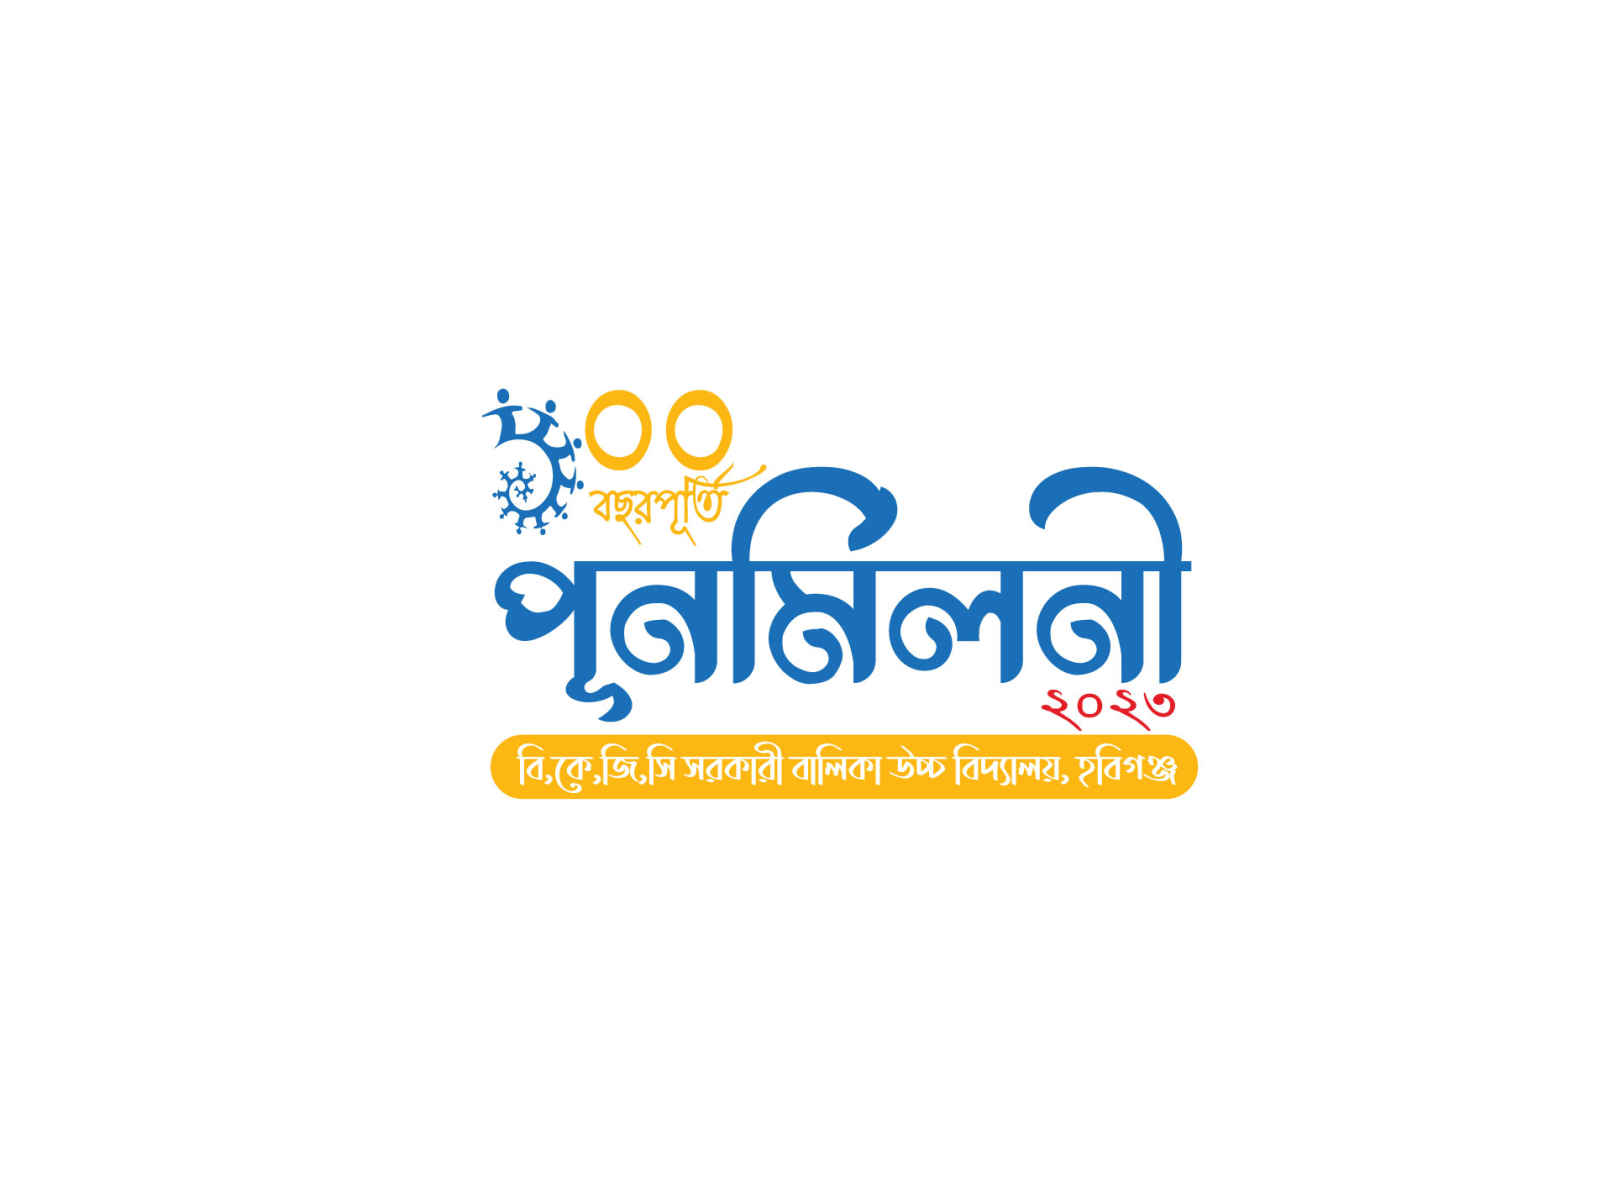 Logo Design by Gokul Hingarajiya | Contra